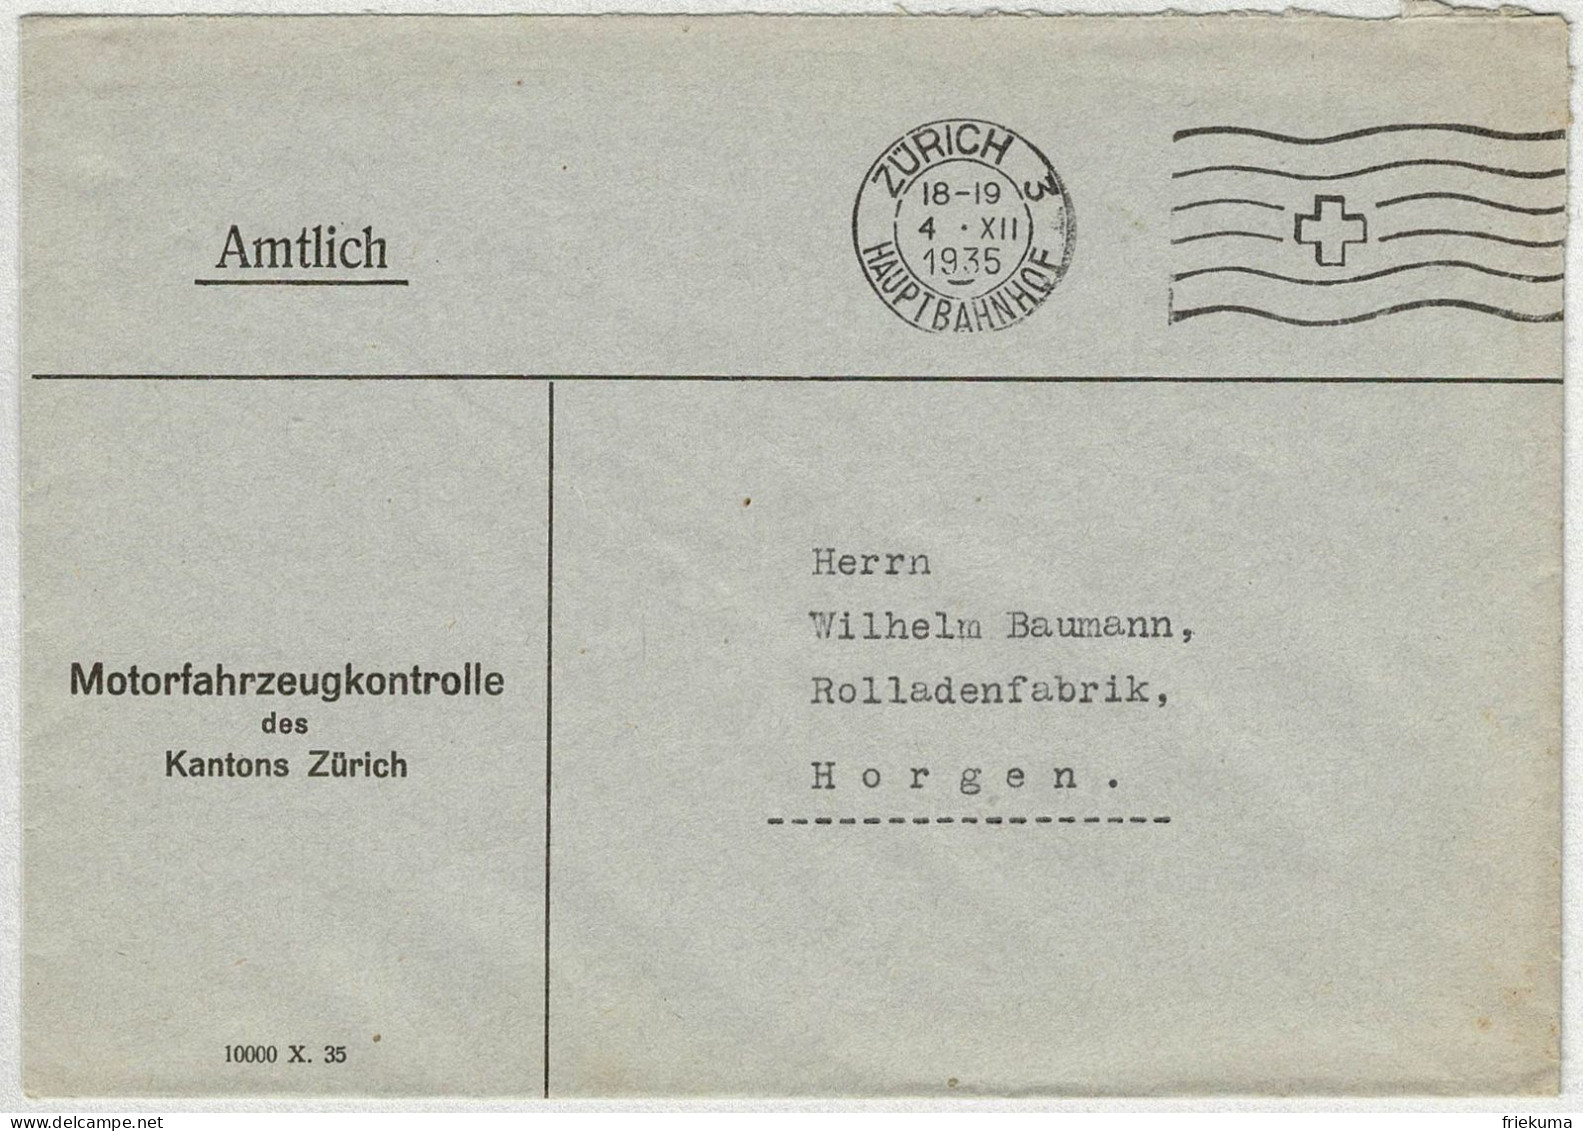 Schweiz 1935, Brief Amtlich Zürich Hauptbahnhof - Horgen - Marcophilie